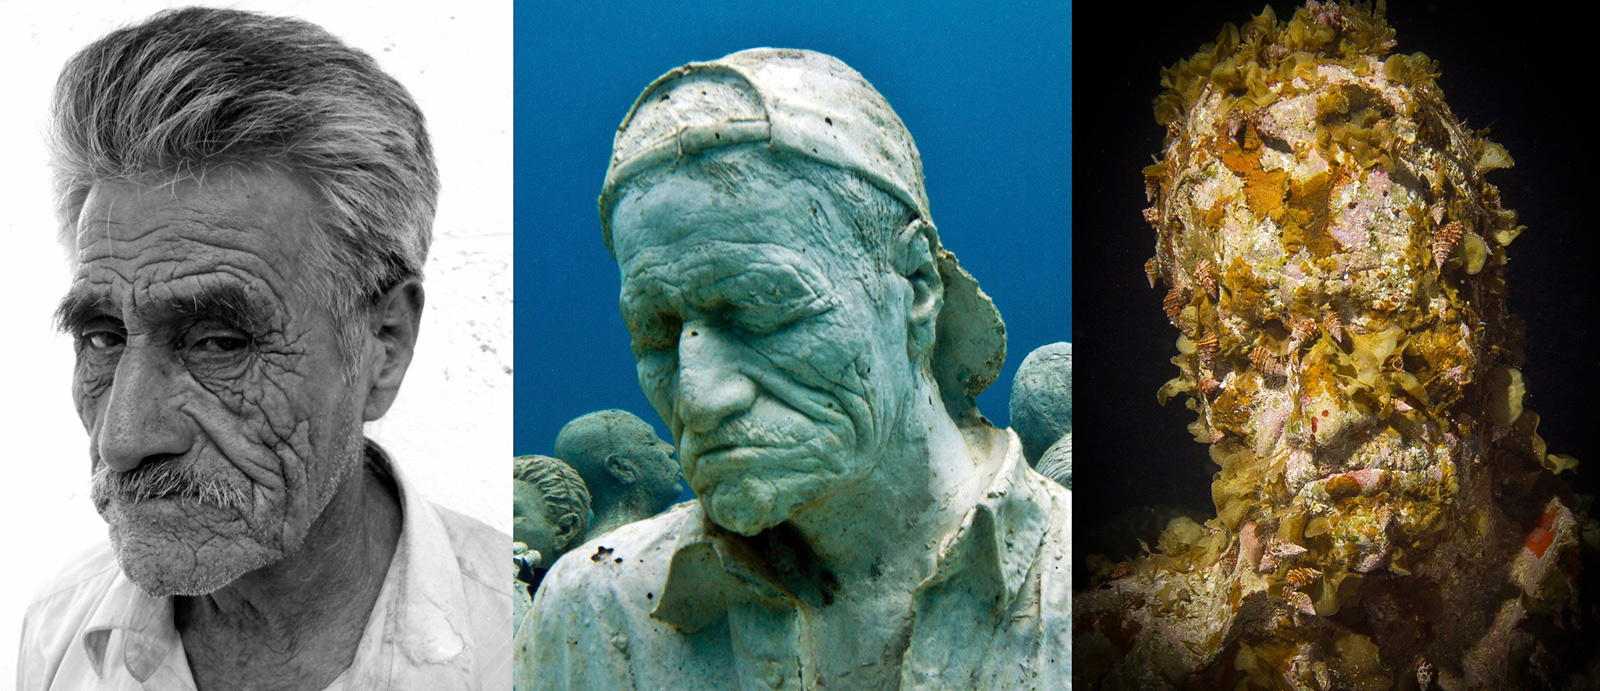 underwater sculpture of man